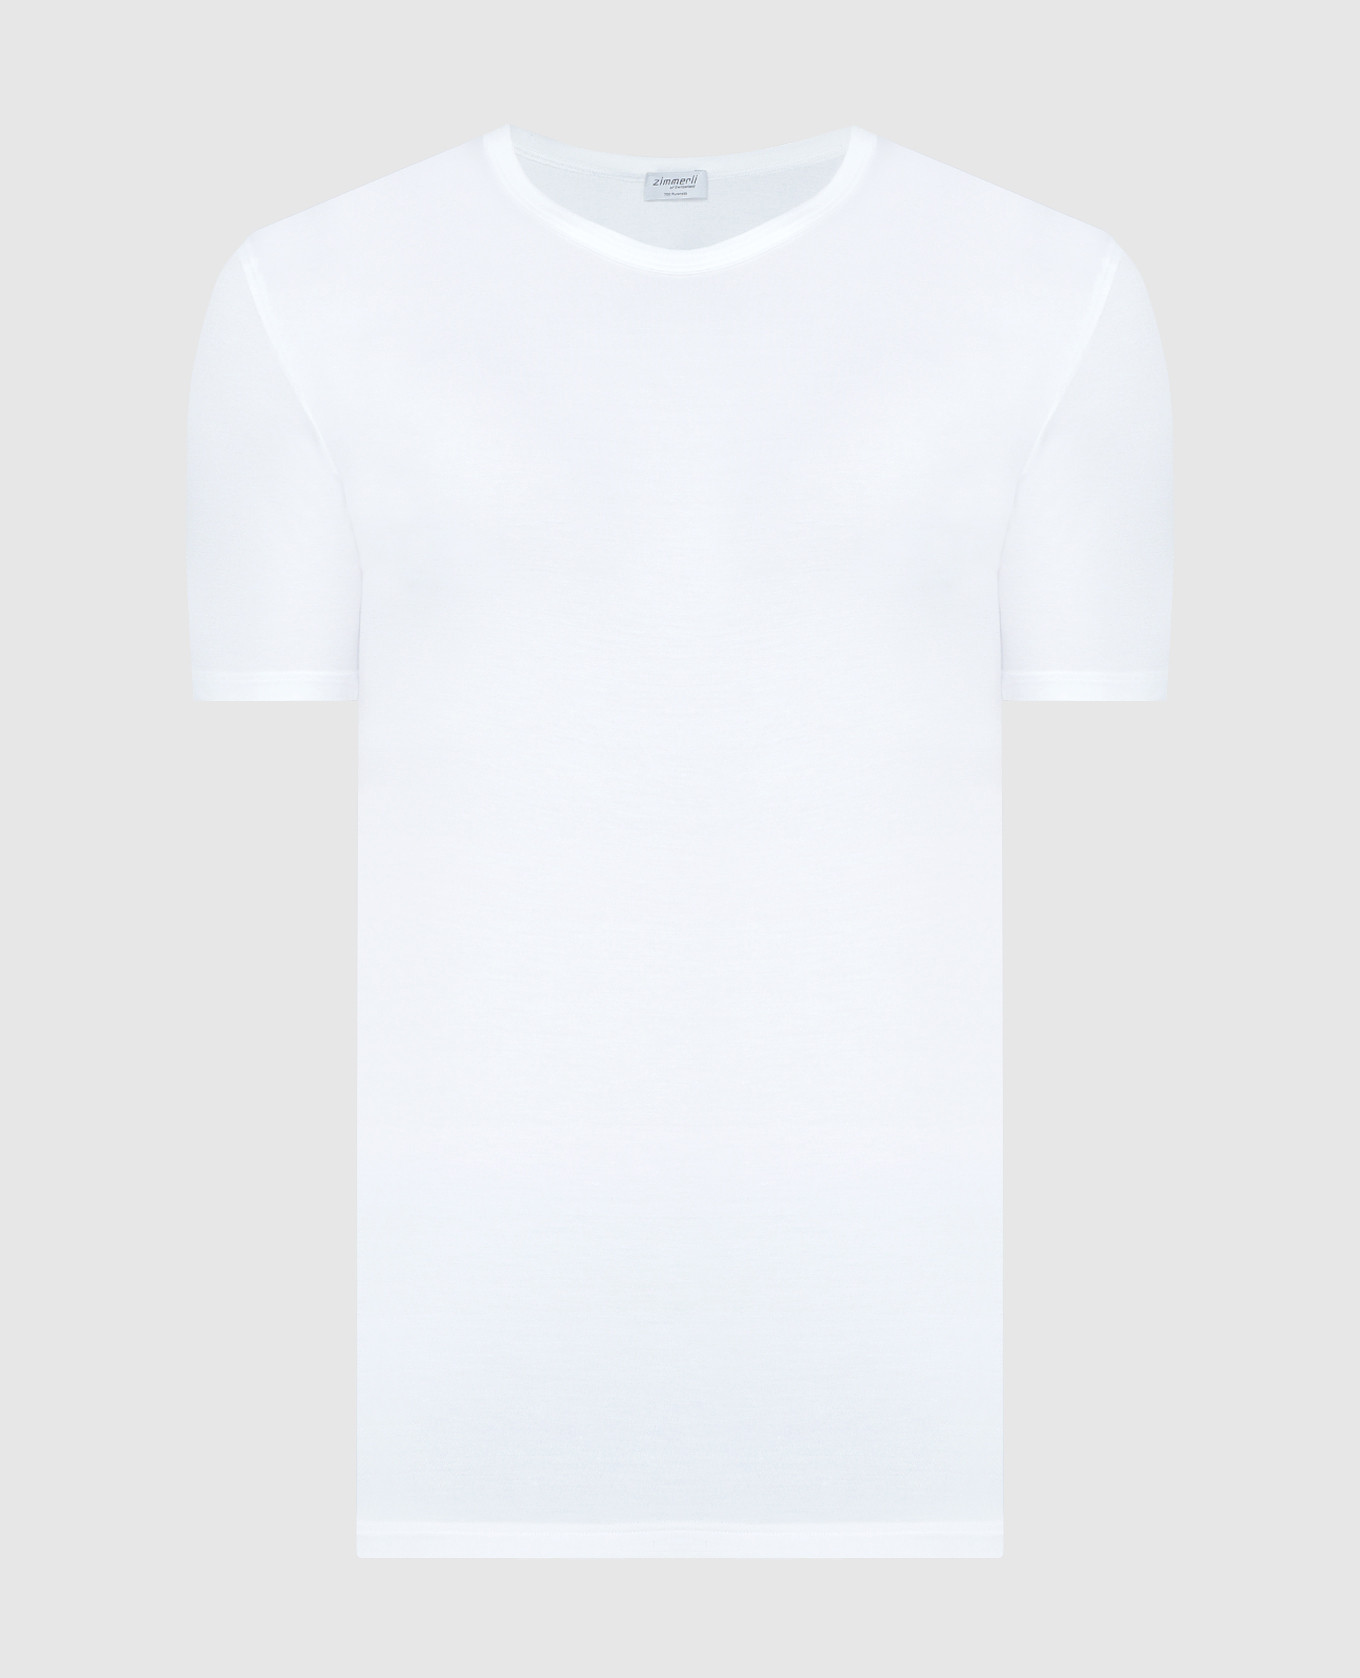 Pureness white t-shirt